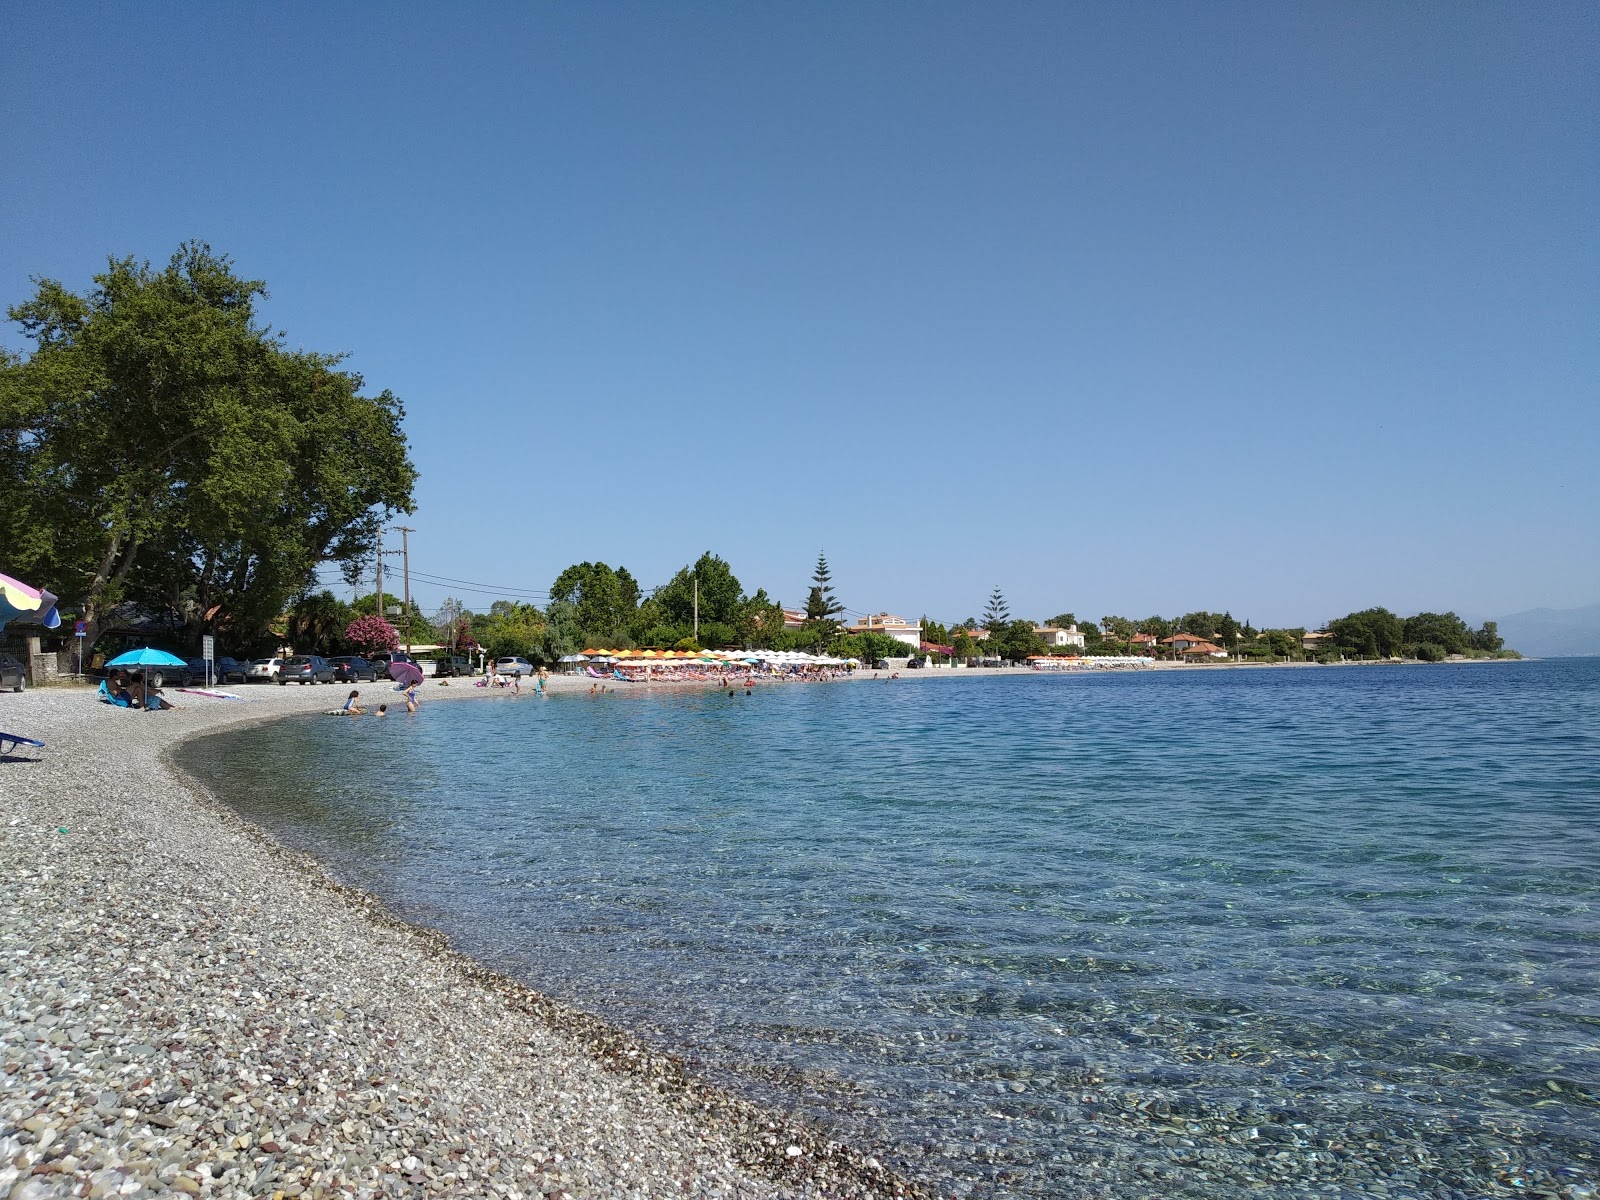 Fotografie cu Skaloma 4 beach cu o suprafață de apa pură turcoaz